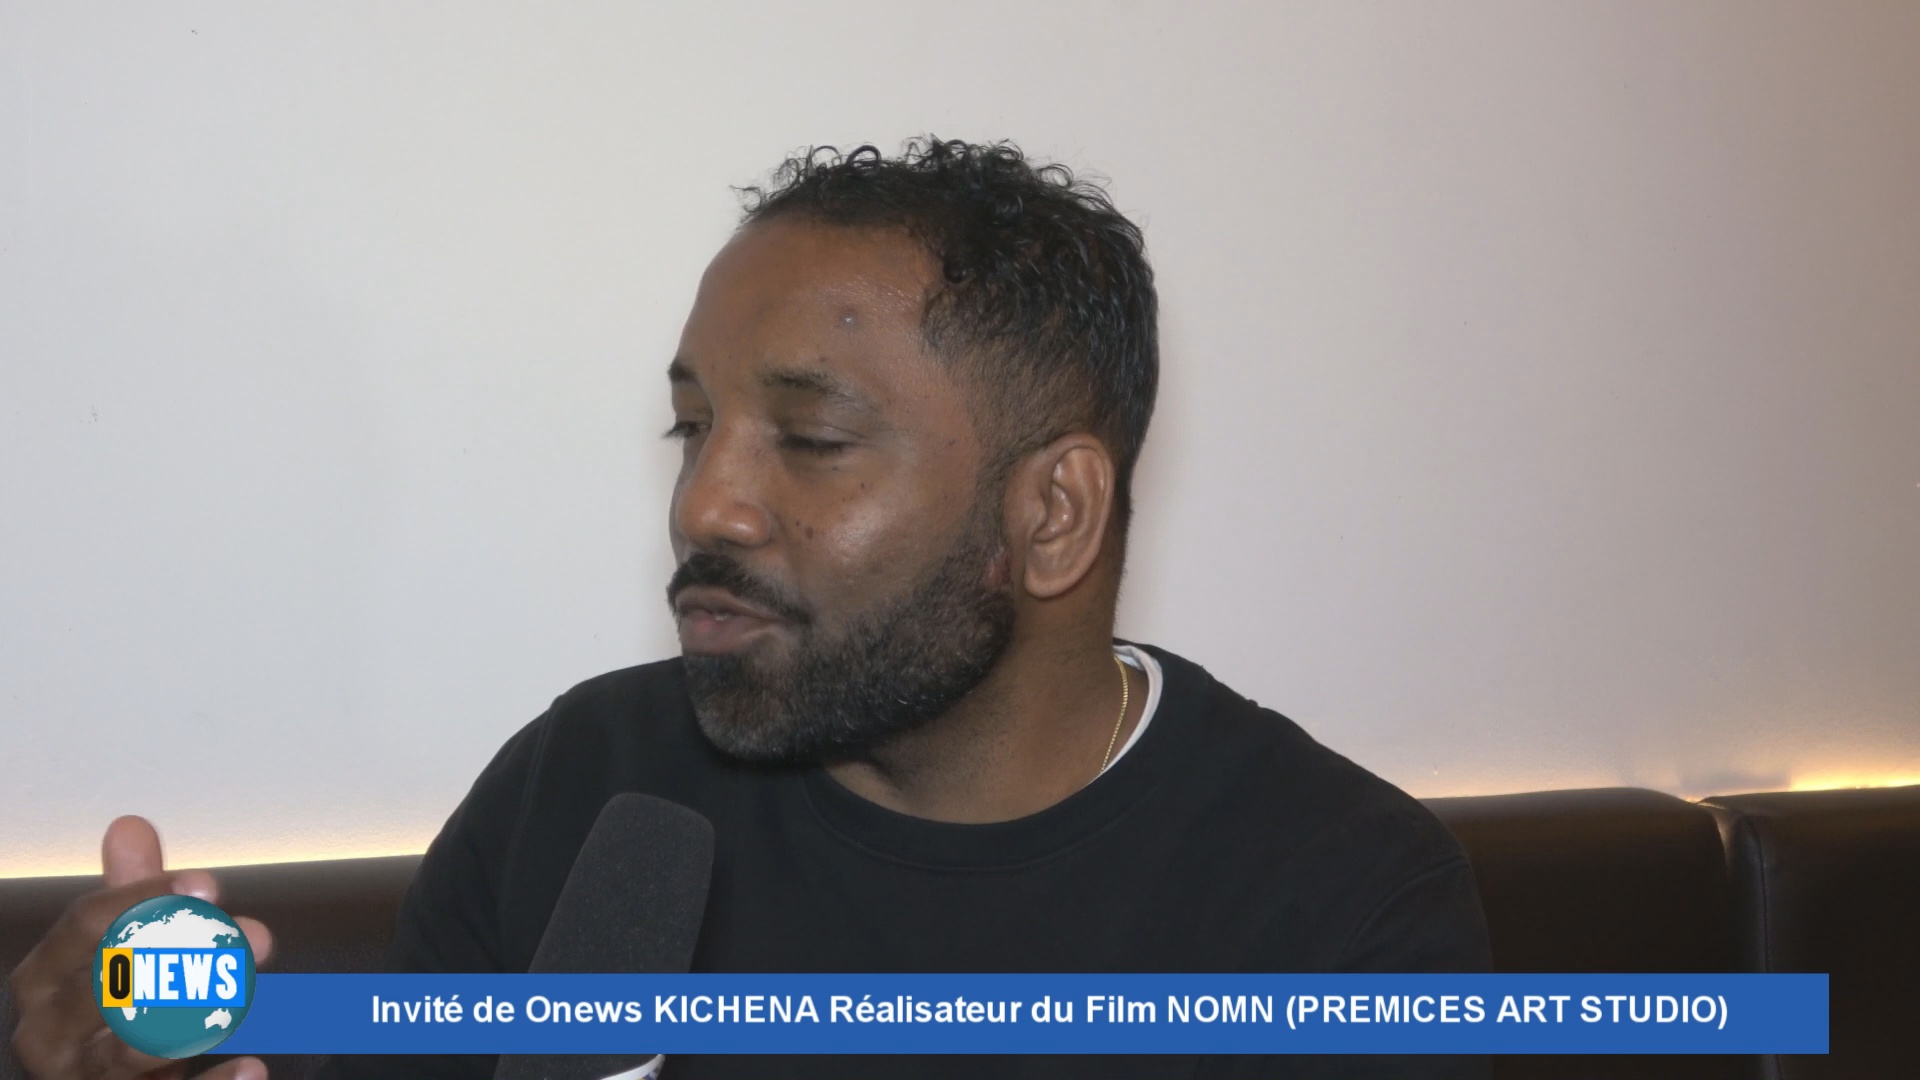 Invité de Onews le réalisateur guadeloupéen KICHENA pour son film qui vient de sortir NOMN